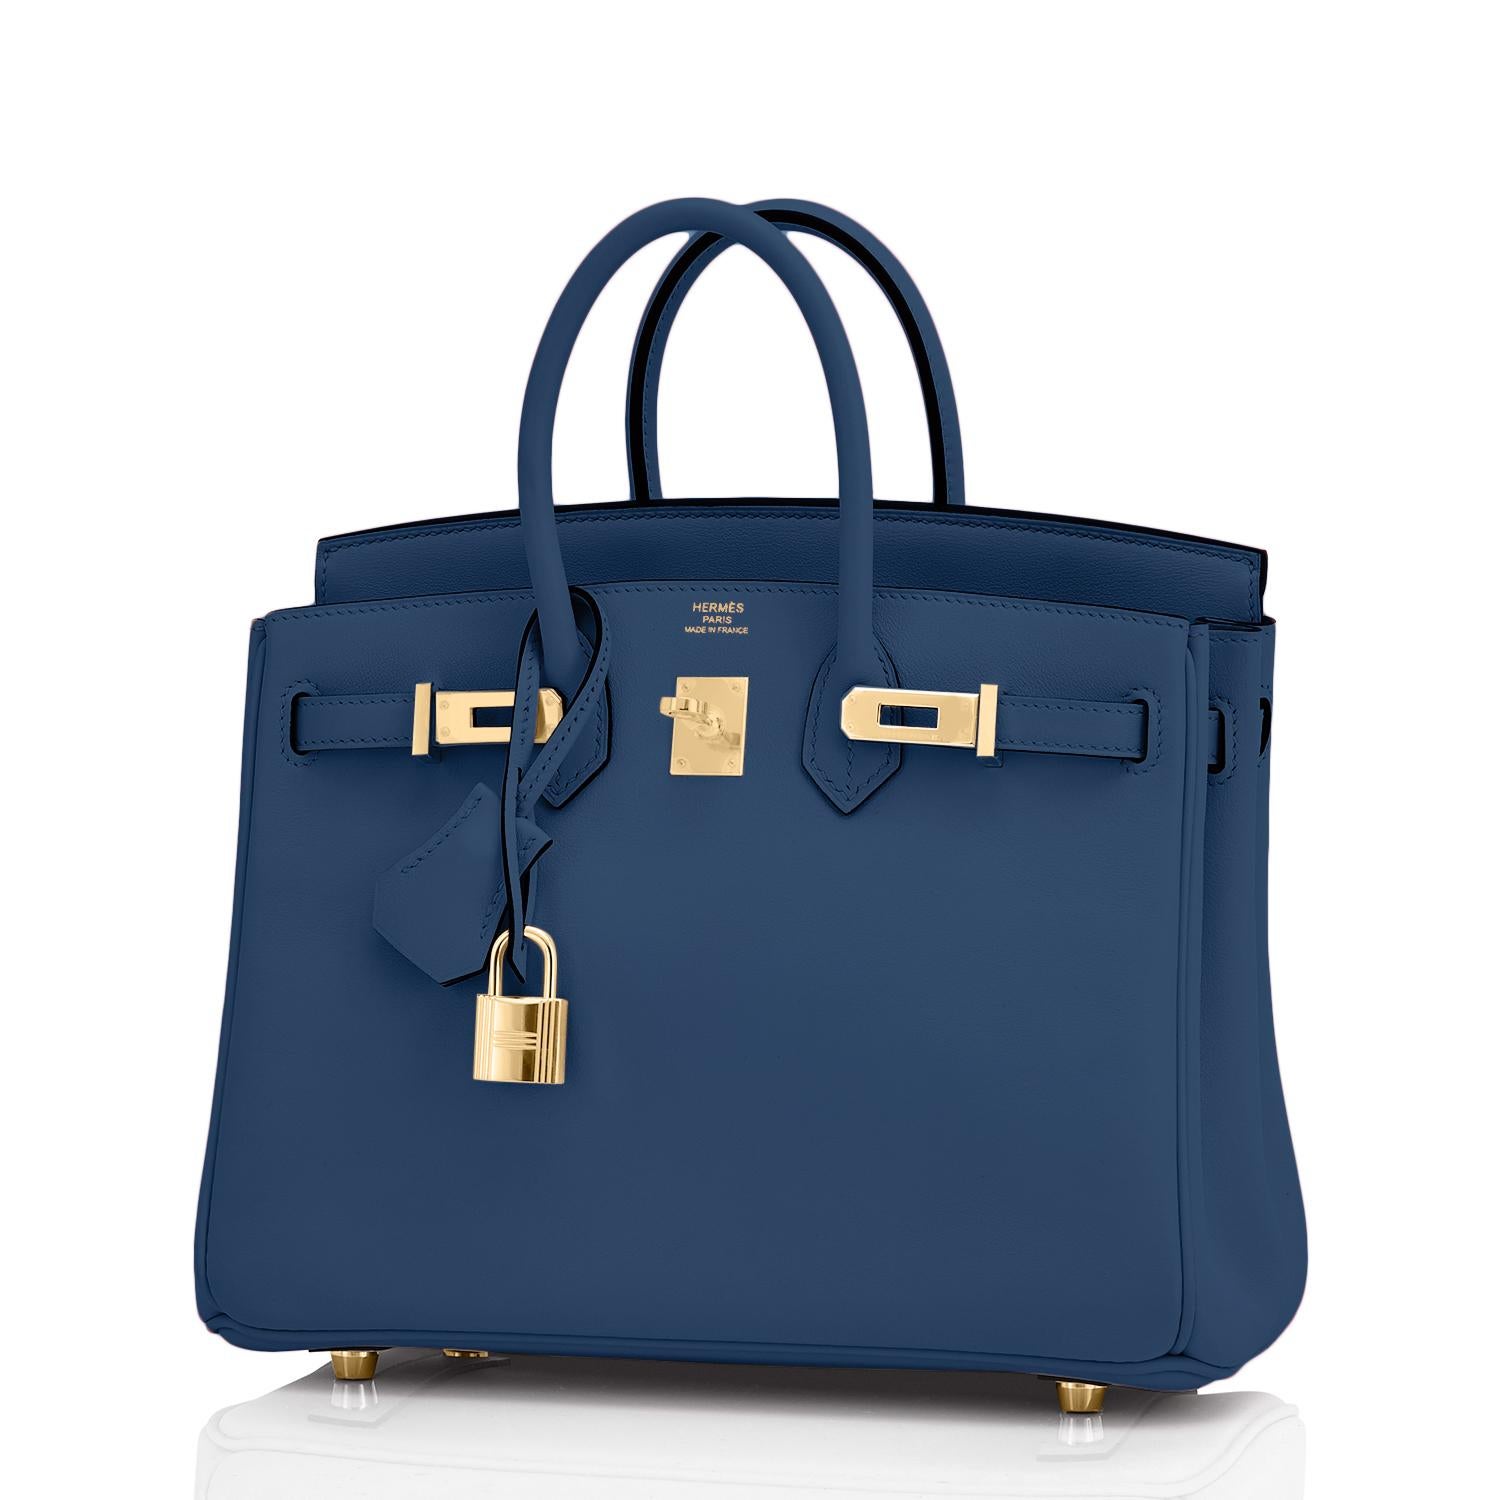 Hermes Birkin 25 Deep Blue Jewel Toned Navy Bag Gold Hardware Y Stamp, 2020 1